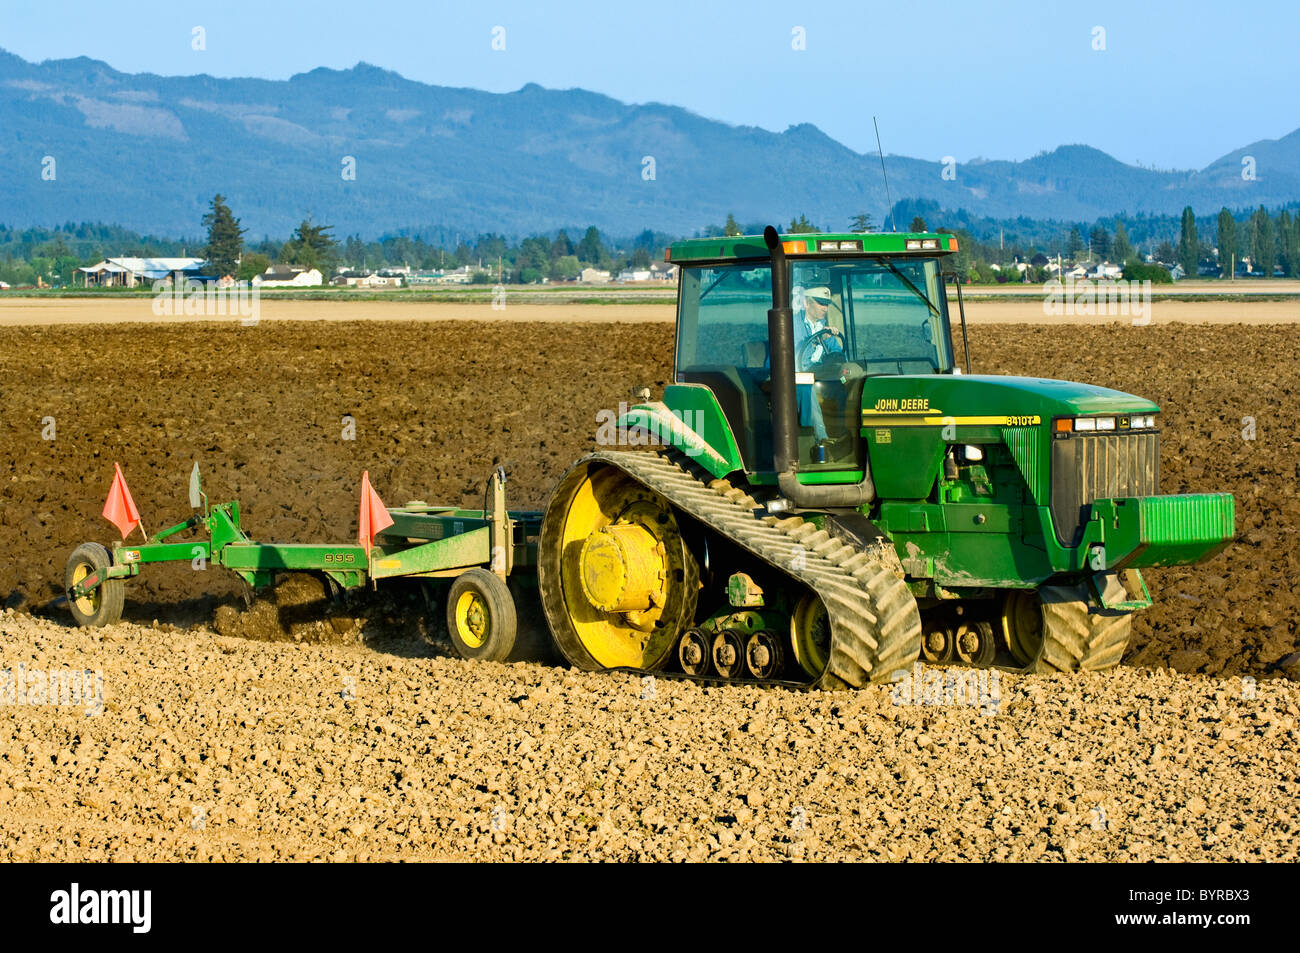 Un tracteur à chenilles John Deere tirant une charrue réversible prépare un champ pour la plantation de pommes de terre / près de Burlington, Vermont, USA Banque D'Images